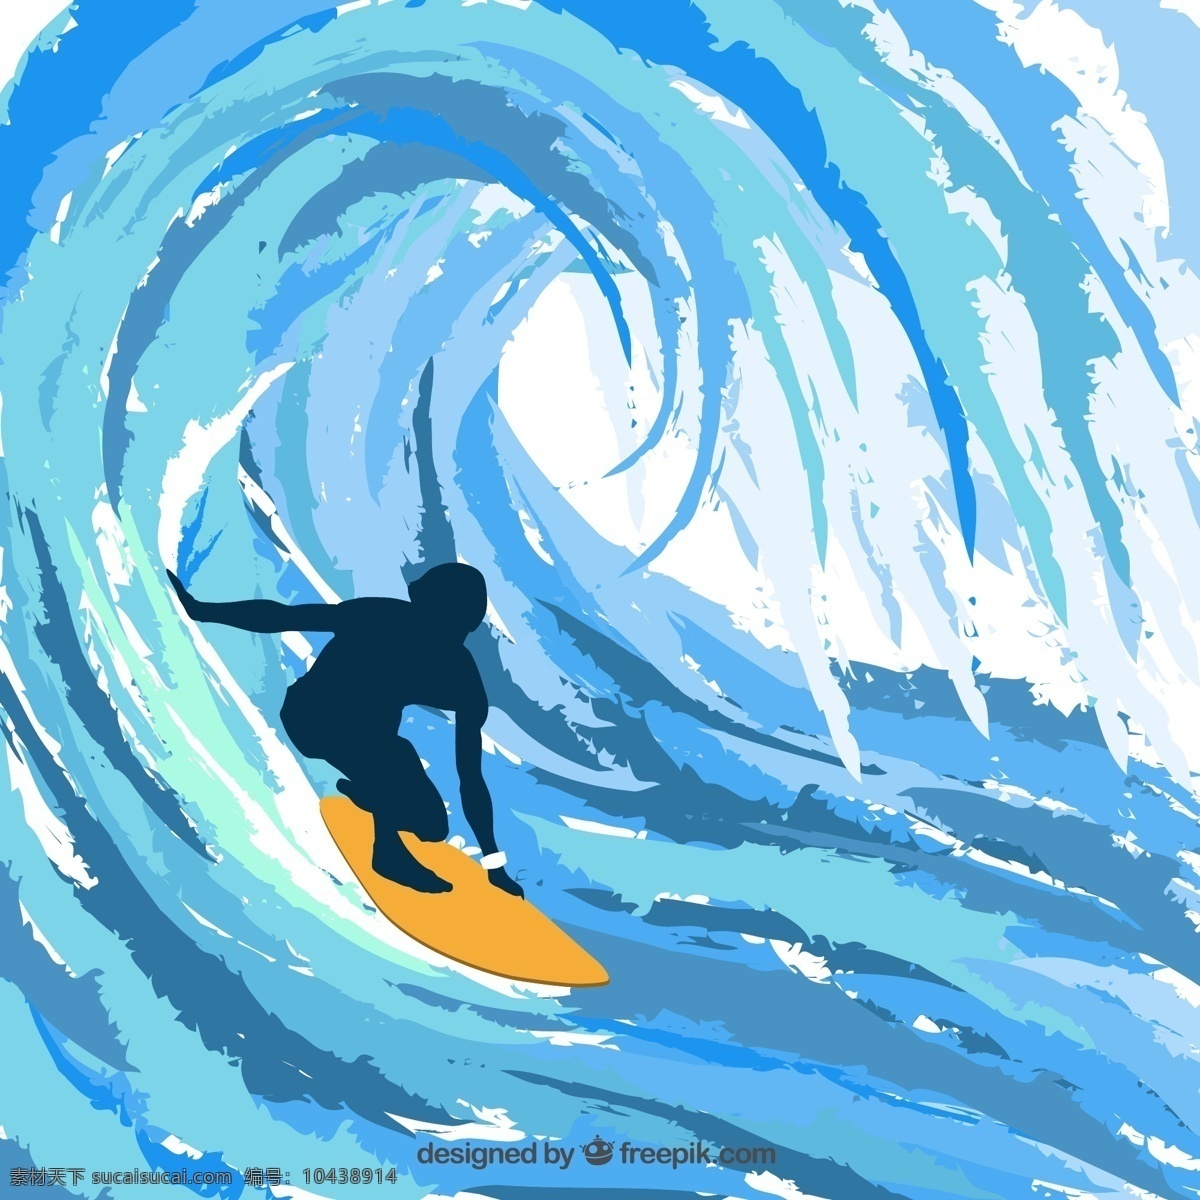 剪影的冲浪 摘要夏天 水 运动 海 波 轮廓 冲浪 抽象的波 海浪 冲浪运动 青色 天蓝色